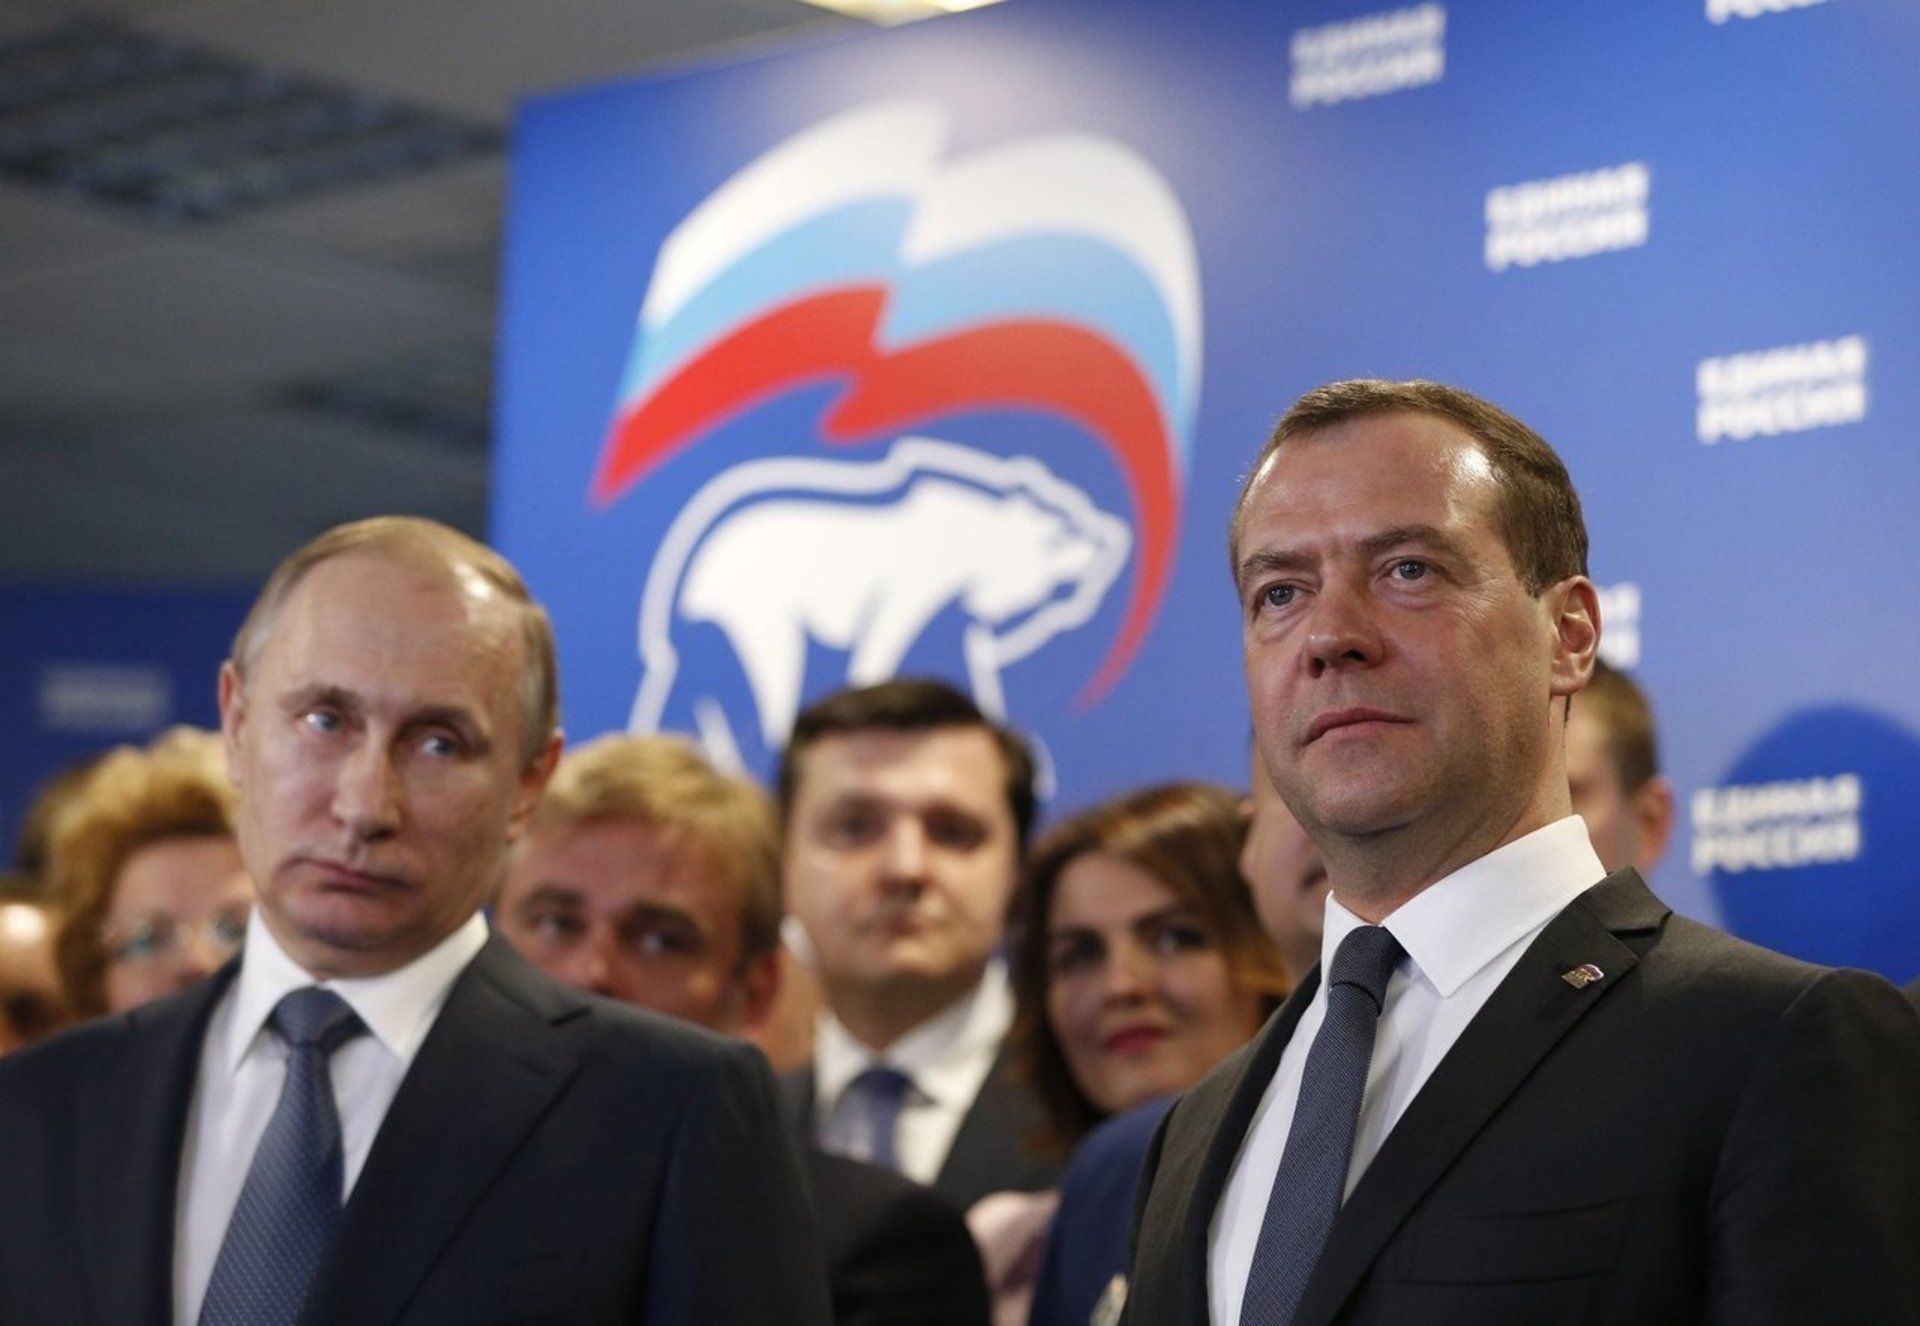 Партия медведева единая россия. Председатель Единой России Медведев.